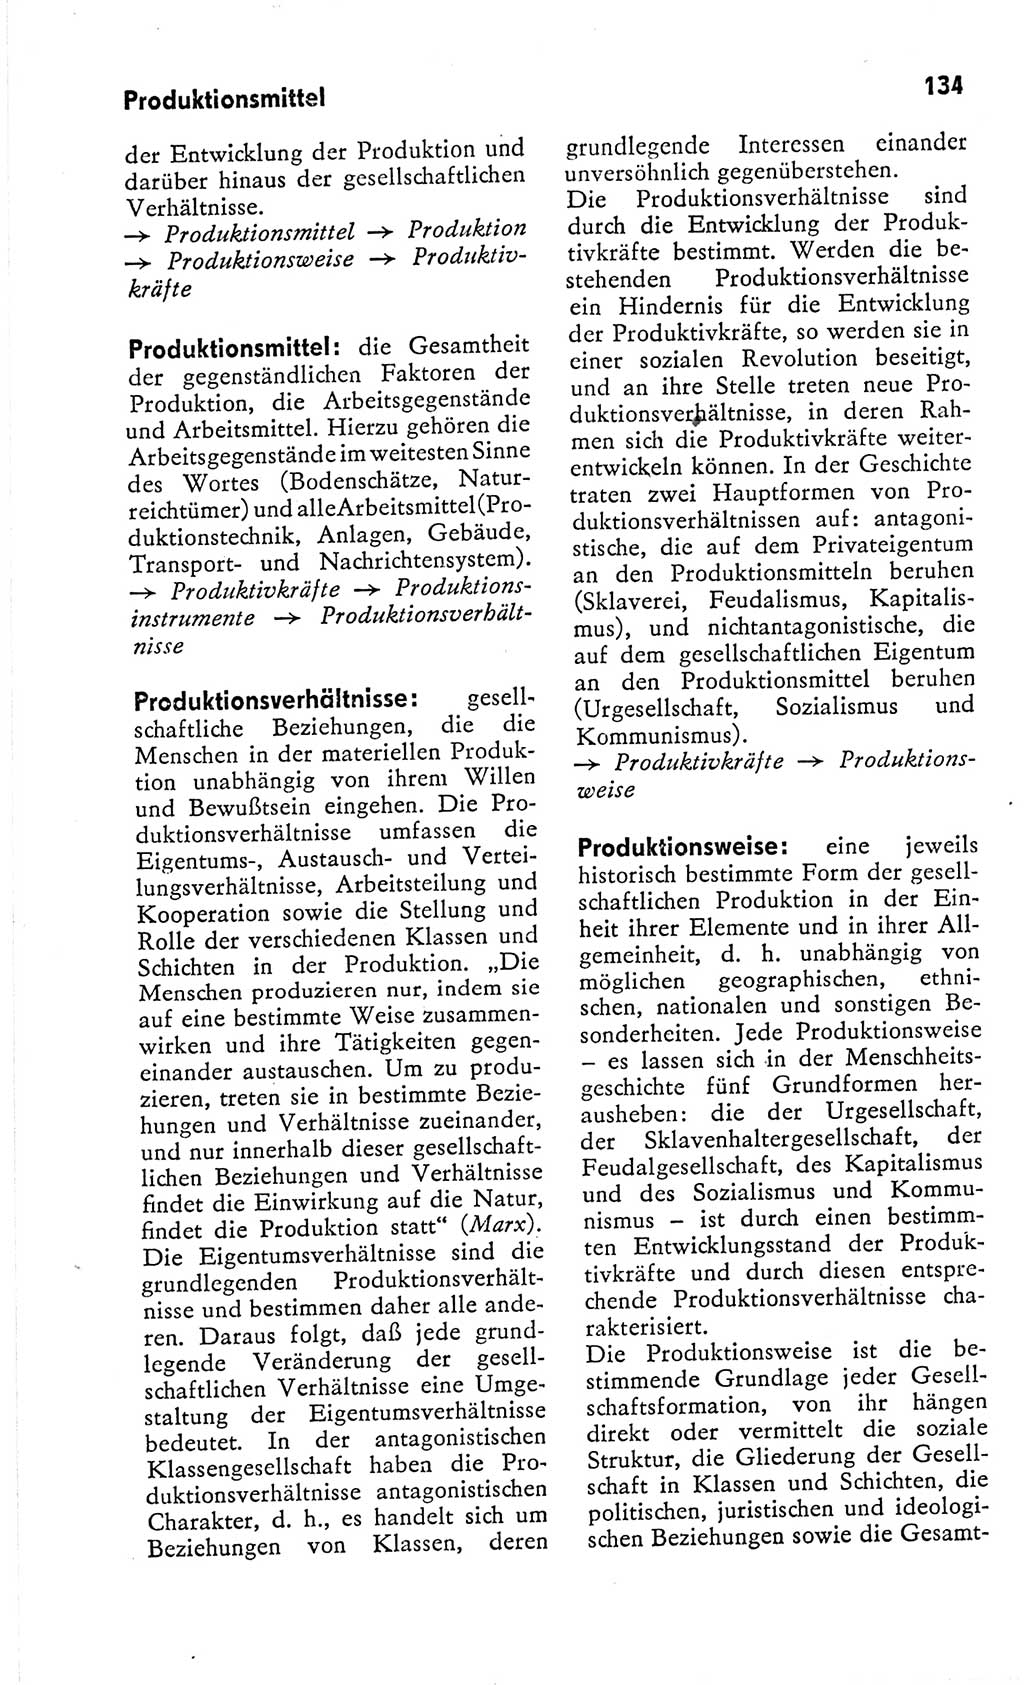 Kleines Wörterbuch der marxistisch-leninistischen Philosophie [Deutsche Demokratische Republik (DDR)] 1966, Seite 134 (Kl. Wb. ML Phil. DDR 1966, S. 134)